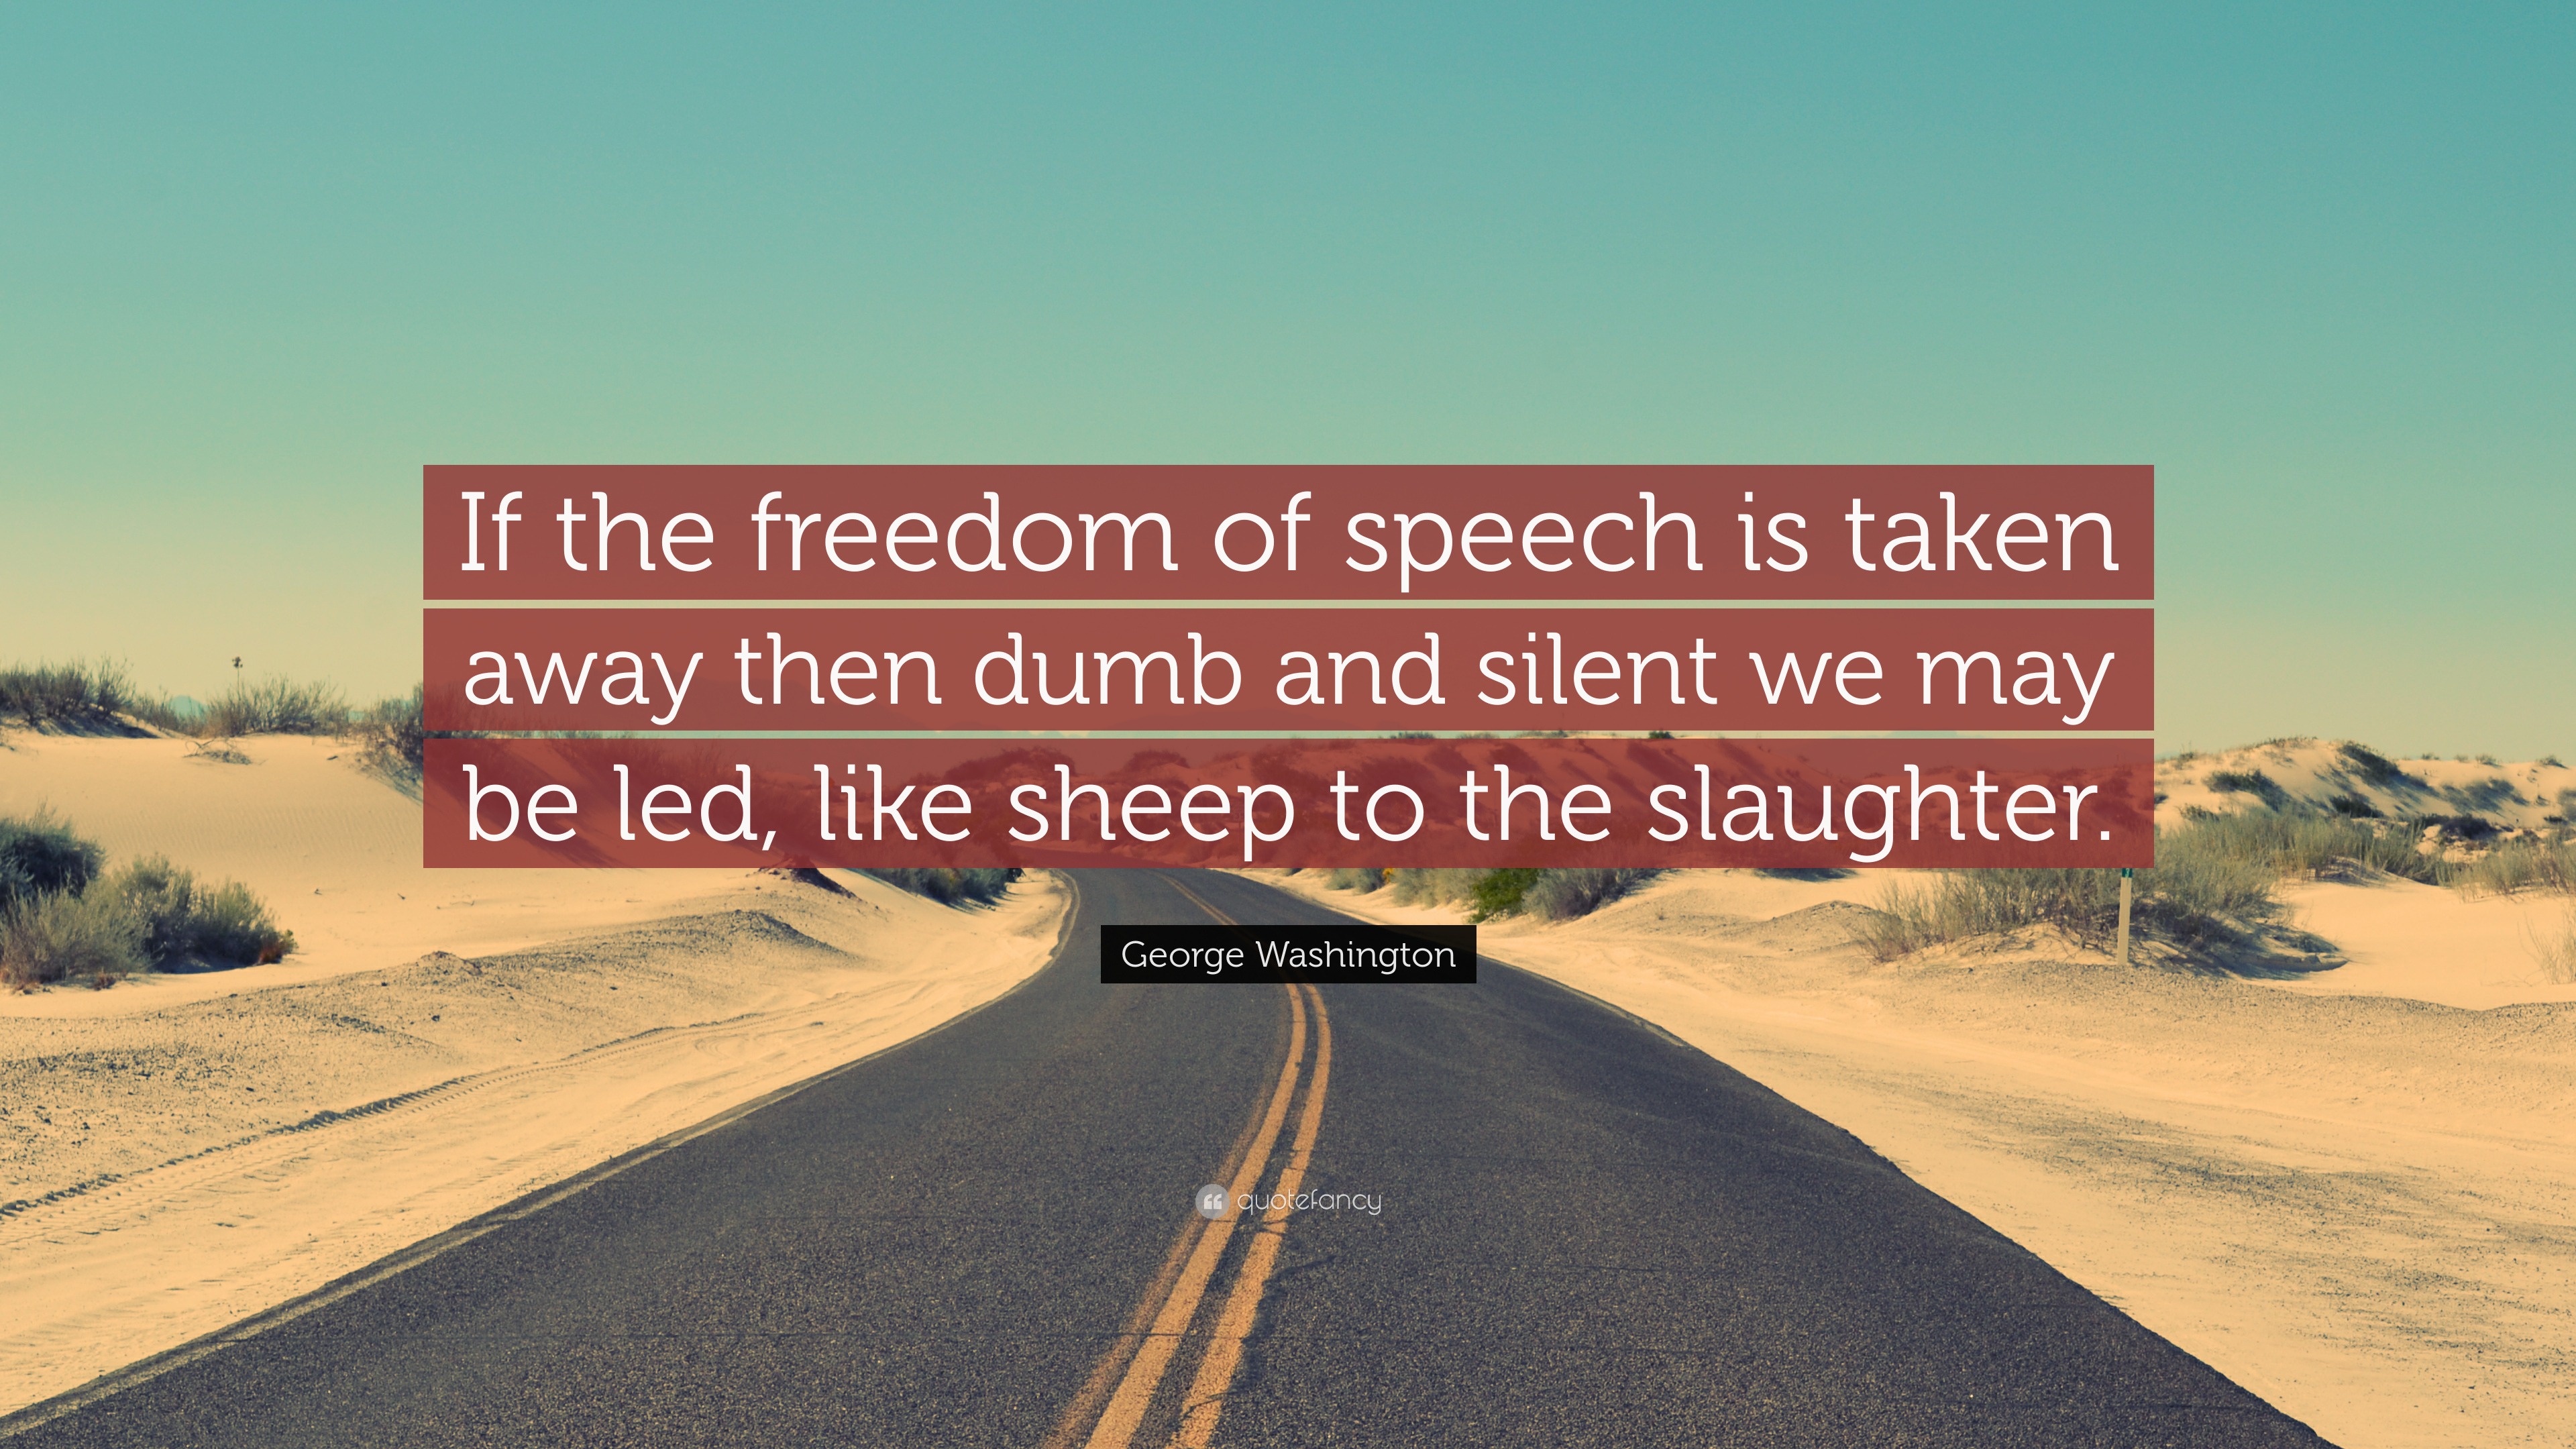 free speech quotes